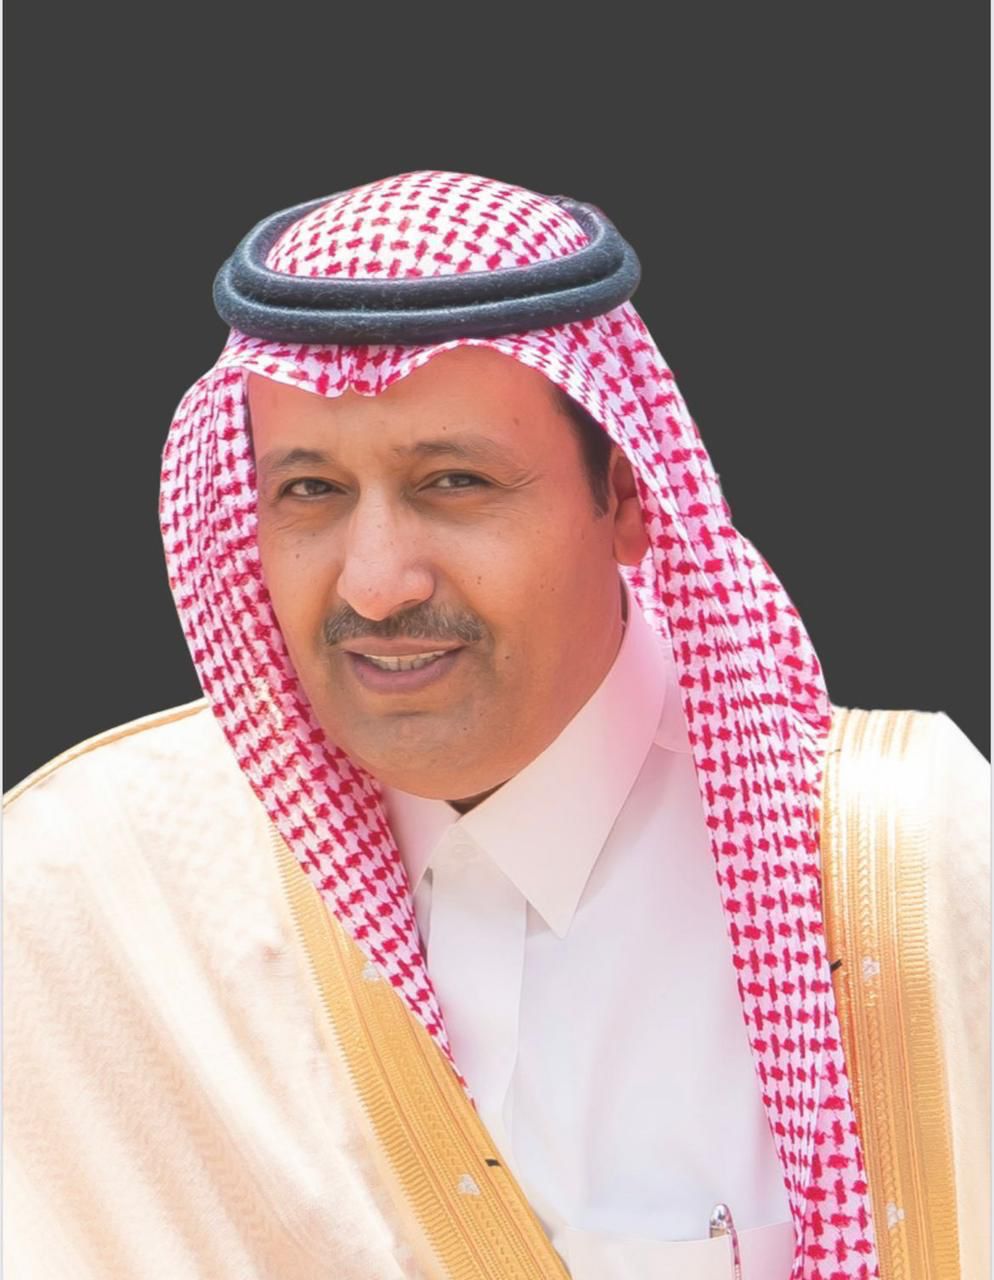 أمير منطقة الباحة يهنئ القيادة بمناسبة نجاح قمة جدة للأمن والتنمية